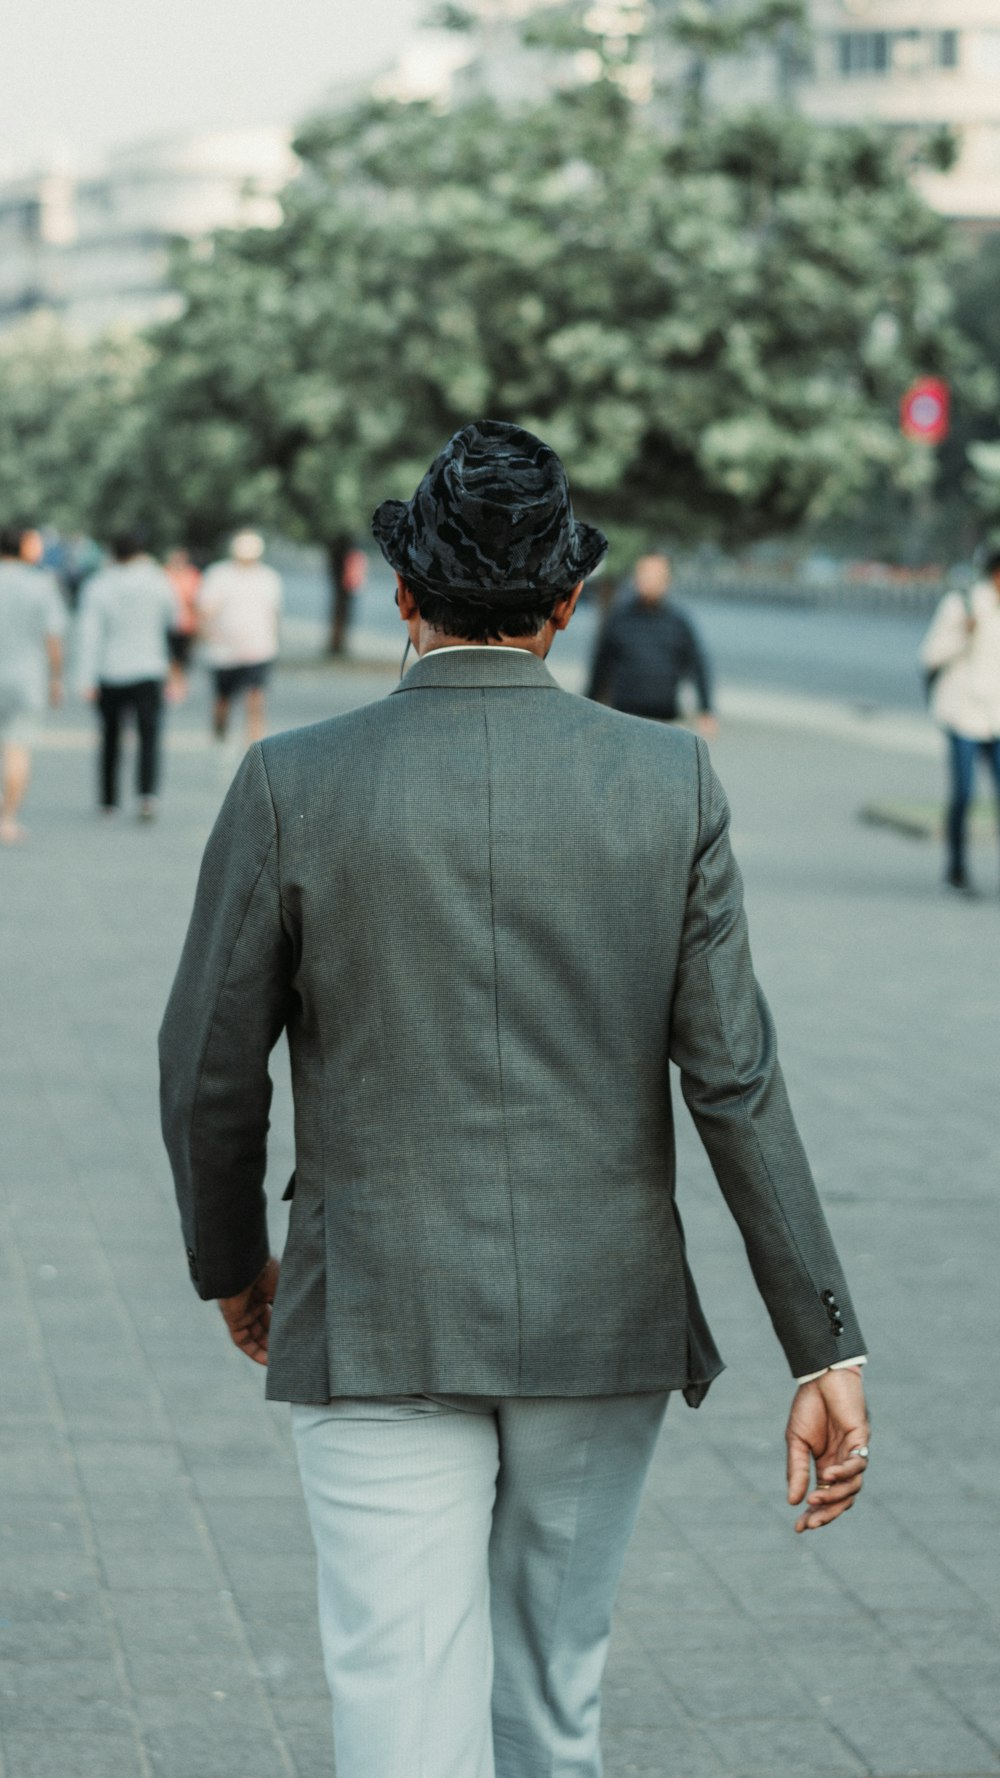 a man in a suit walking down a sidewalk